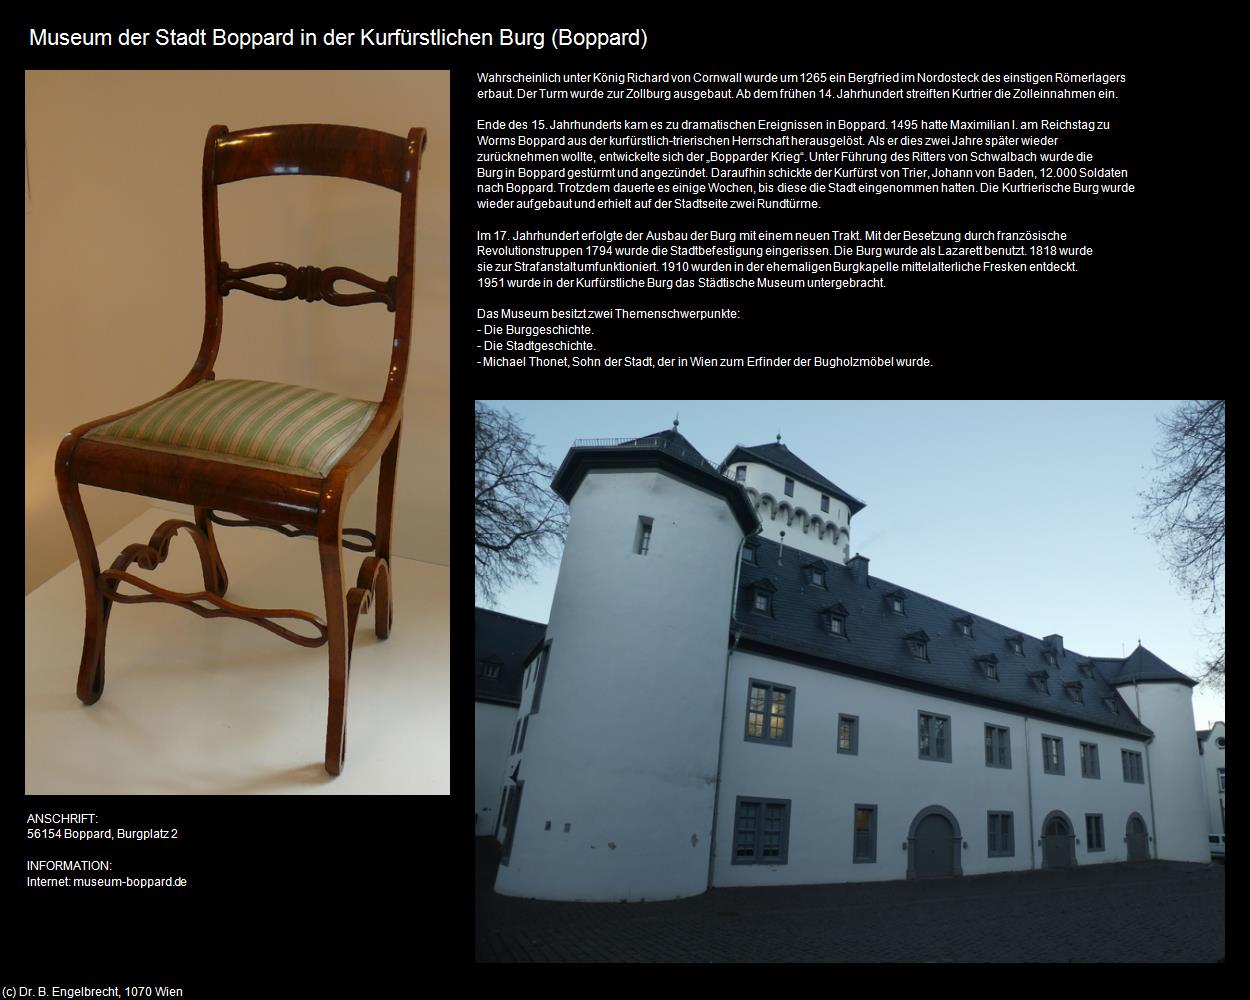 Museum in der Kurfürstlichen Burg (Boppard (DEU-RP)) in RHEINLAND-PFALZ und SAARLAND